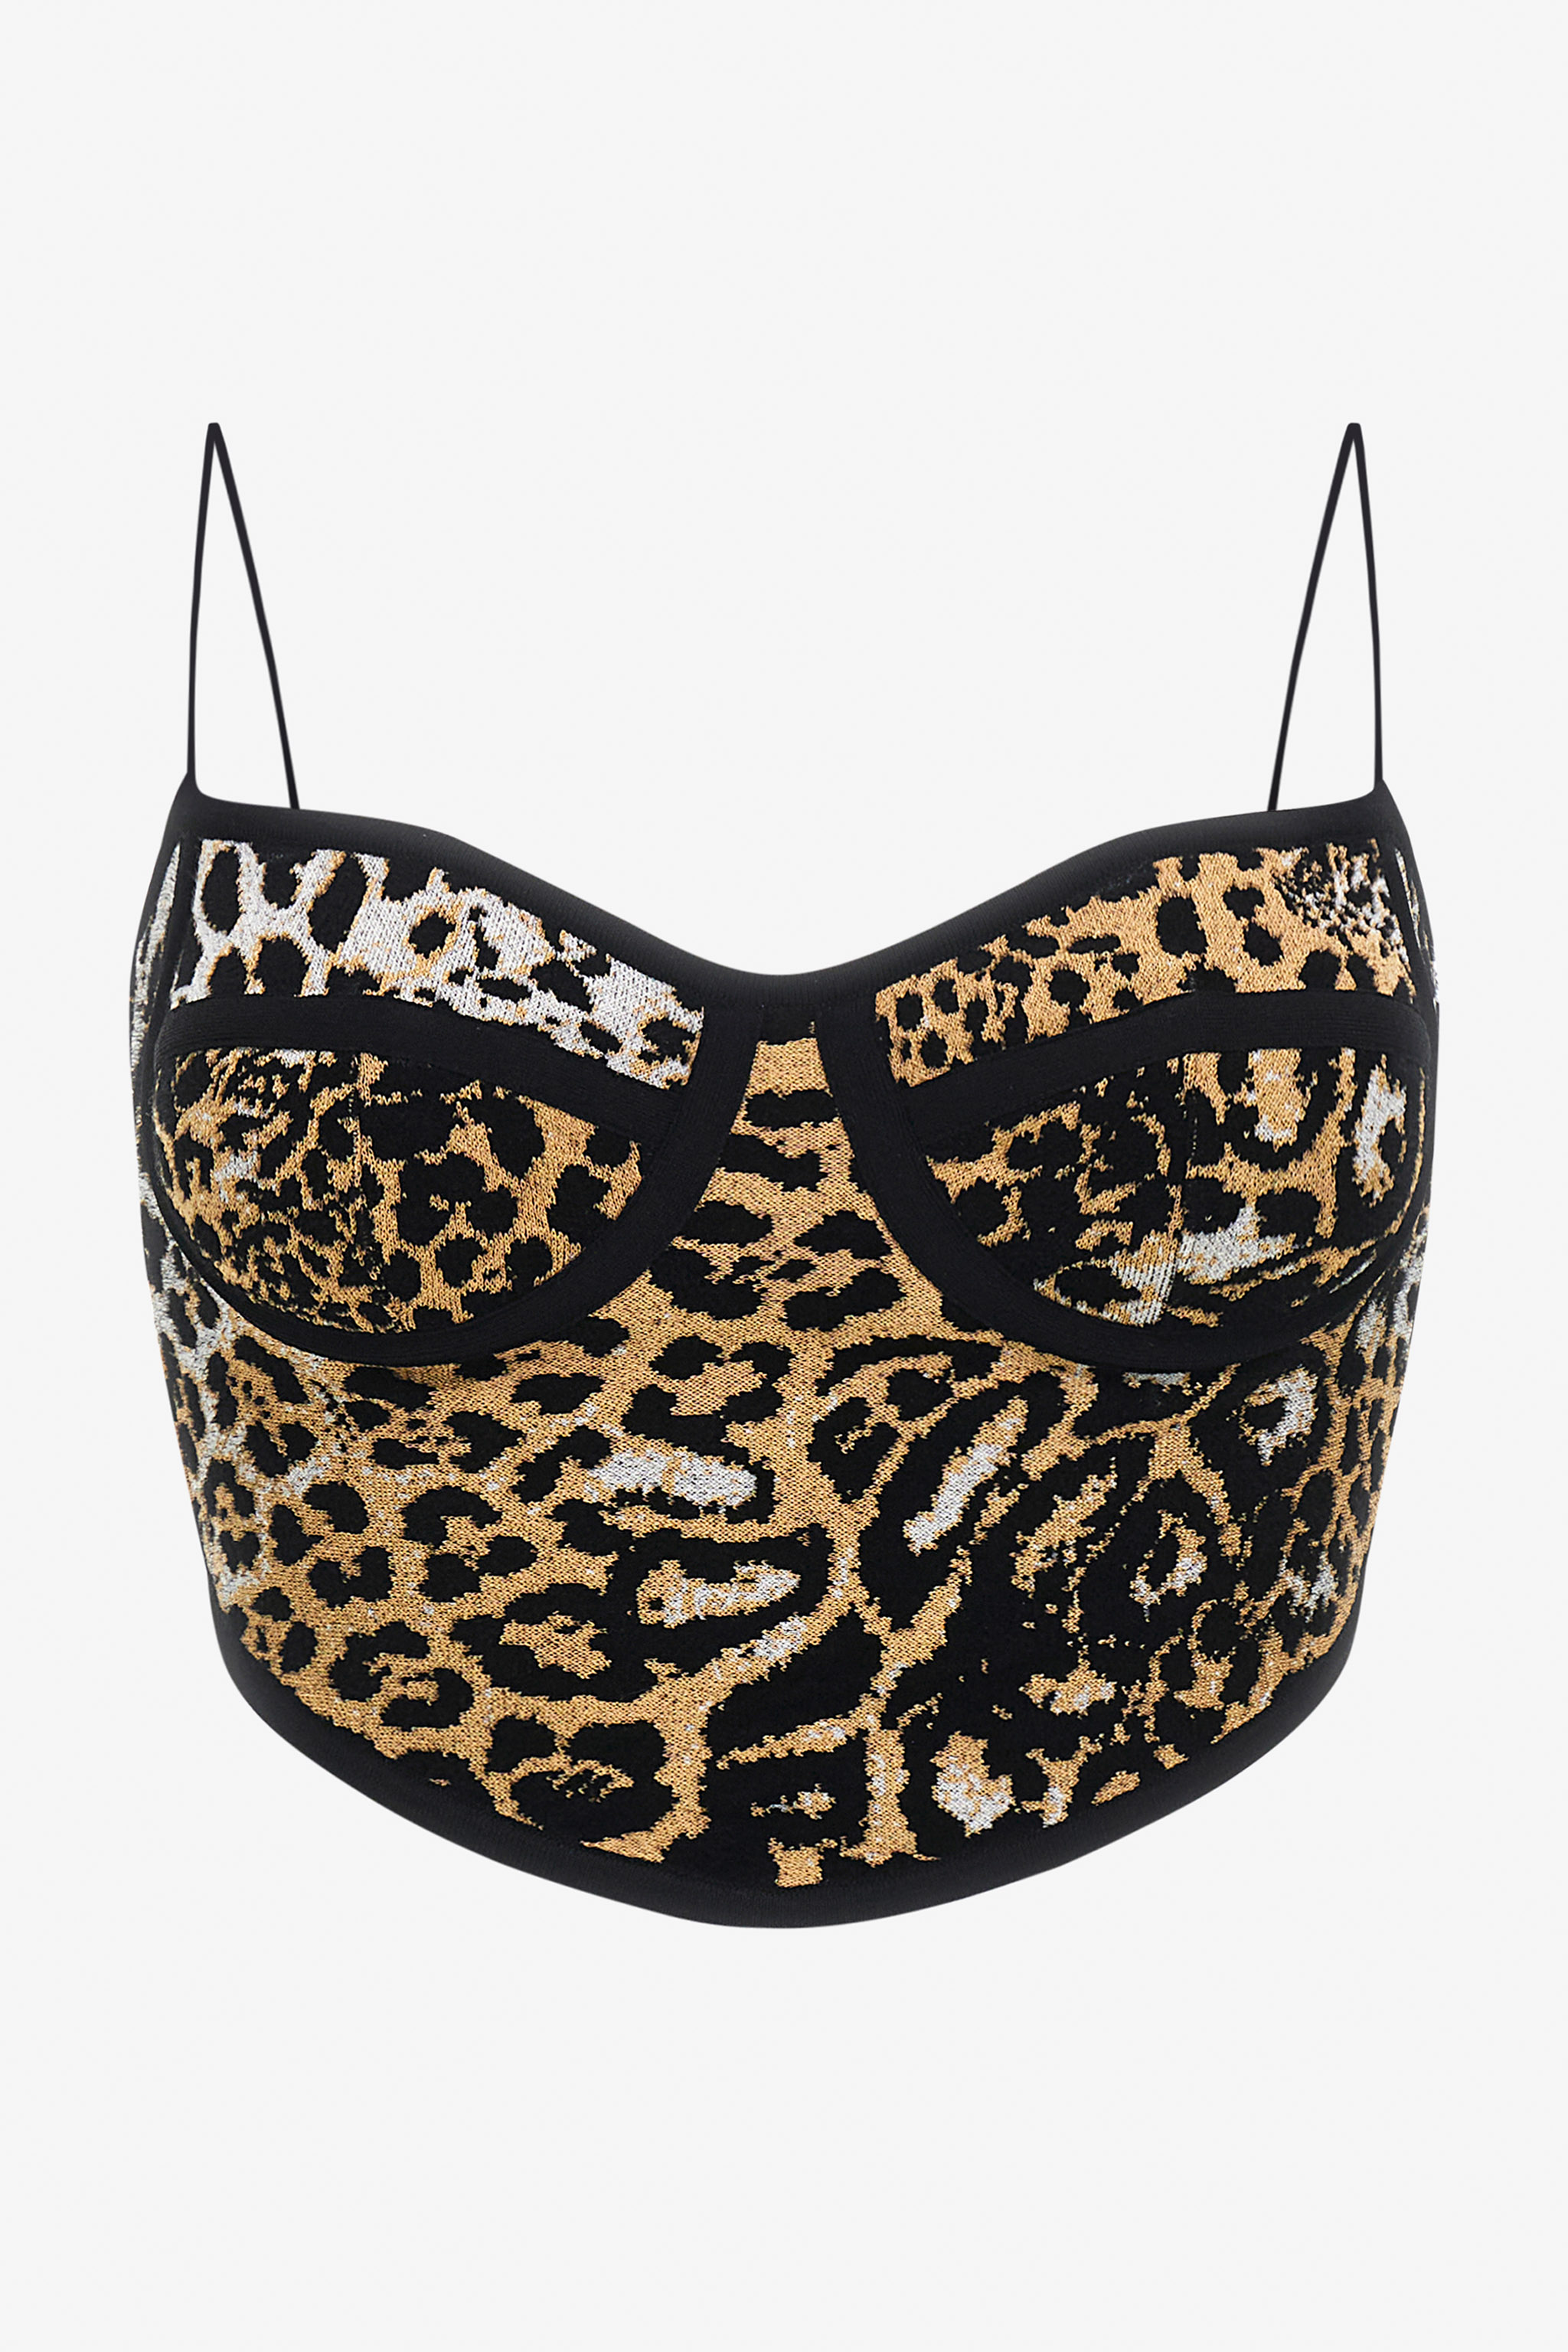 Jaguar Skin print top | BROWN | Women | Roberto Cavalli HK